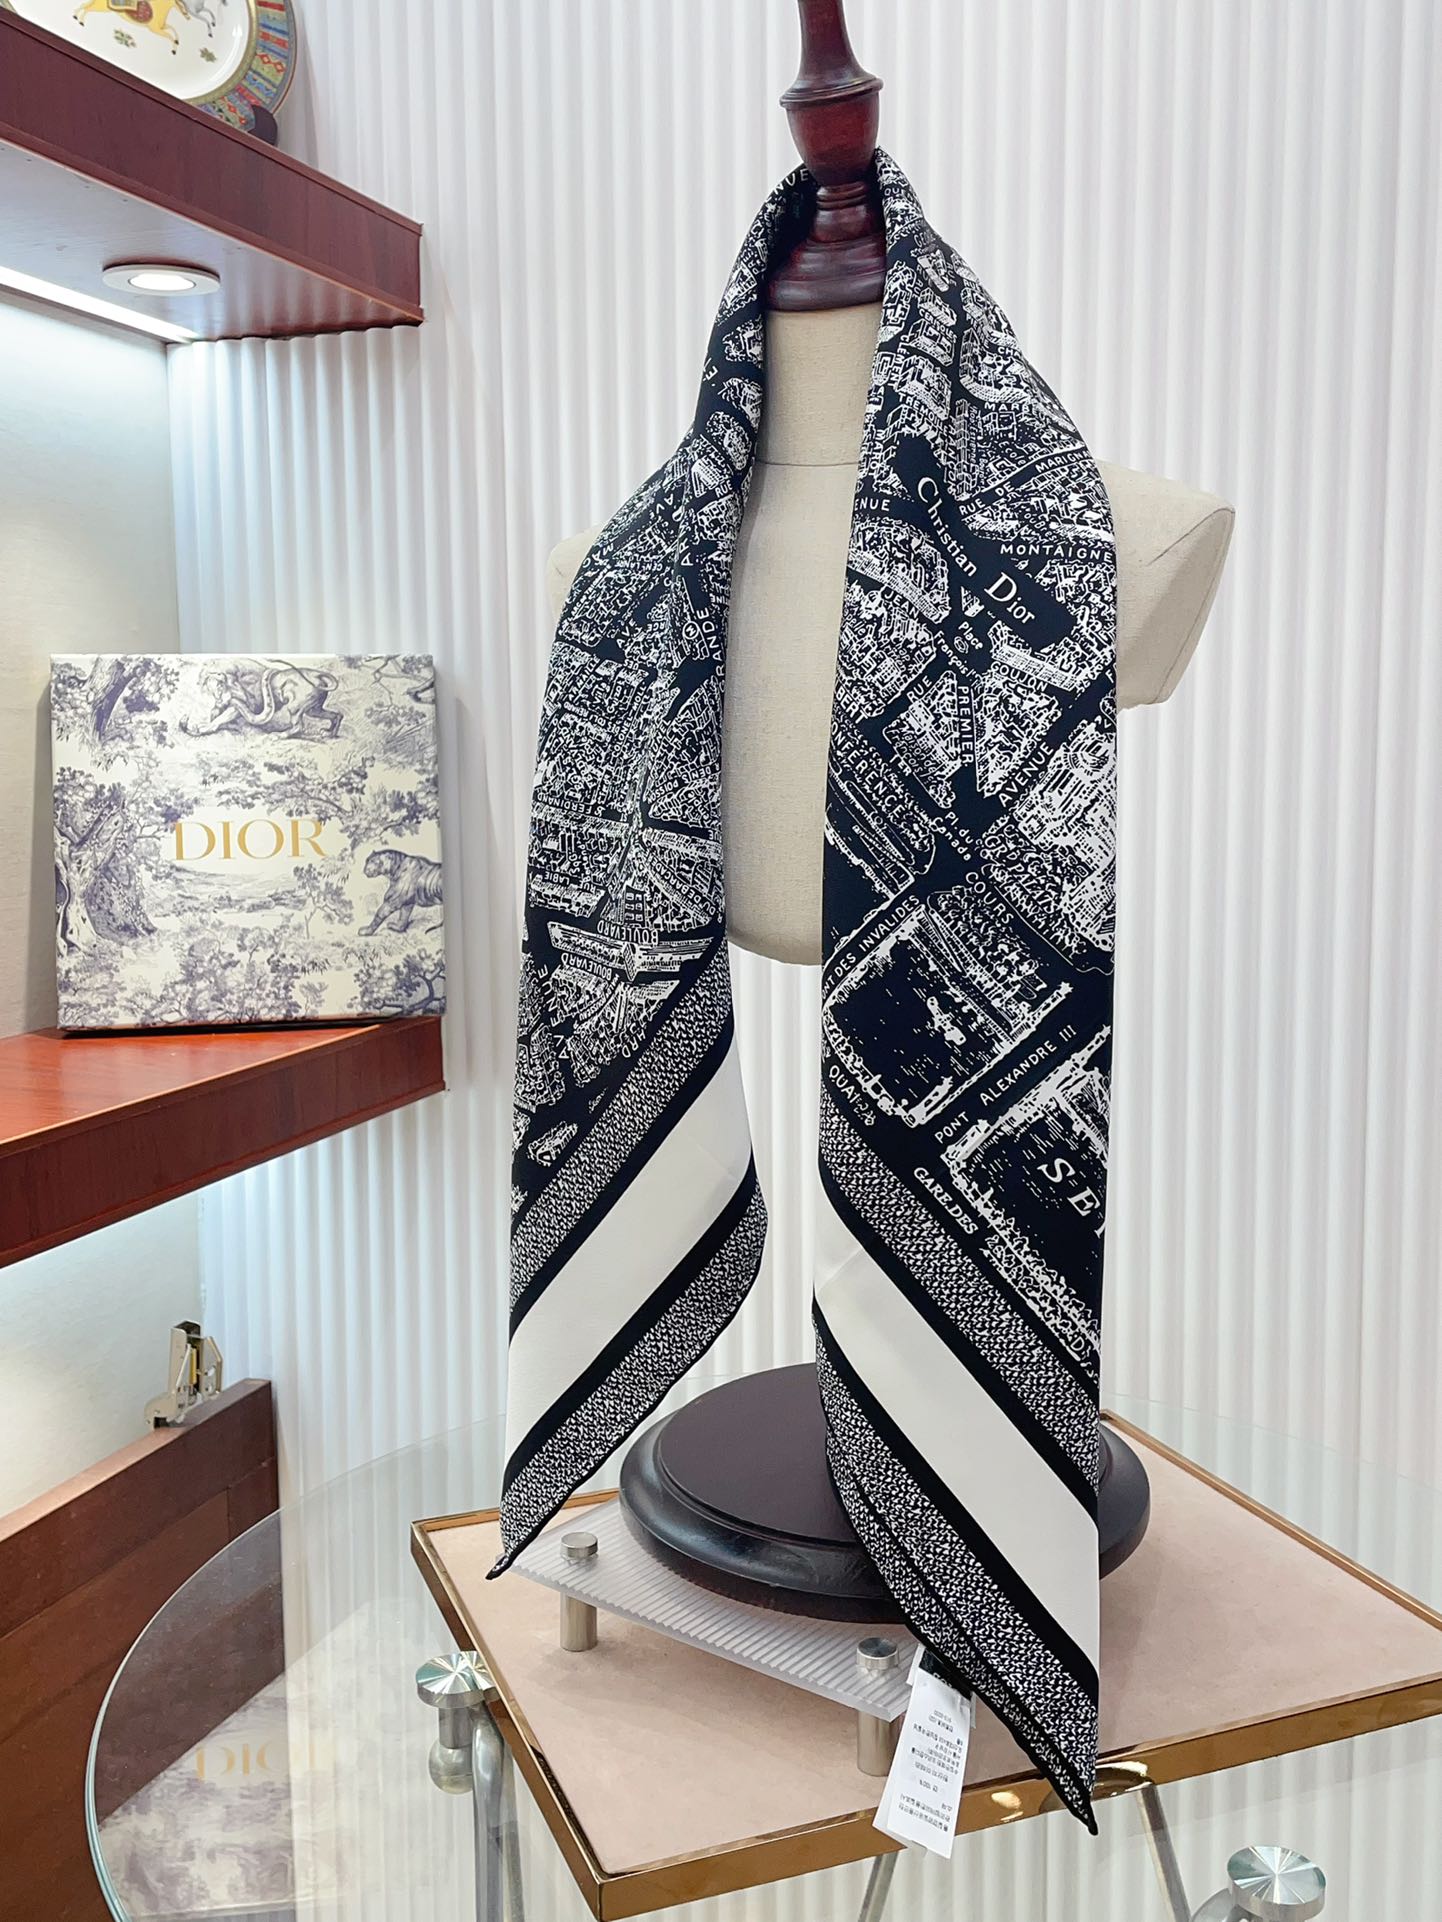 姆米双面同色上新这款方巾饰以本季经典的PlandeParis印花该图案从Dior档案汲取灵感致敬Dior